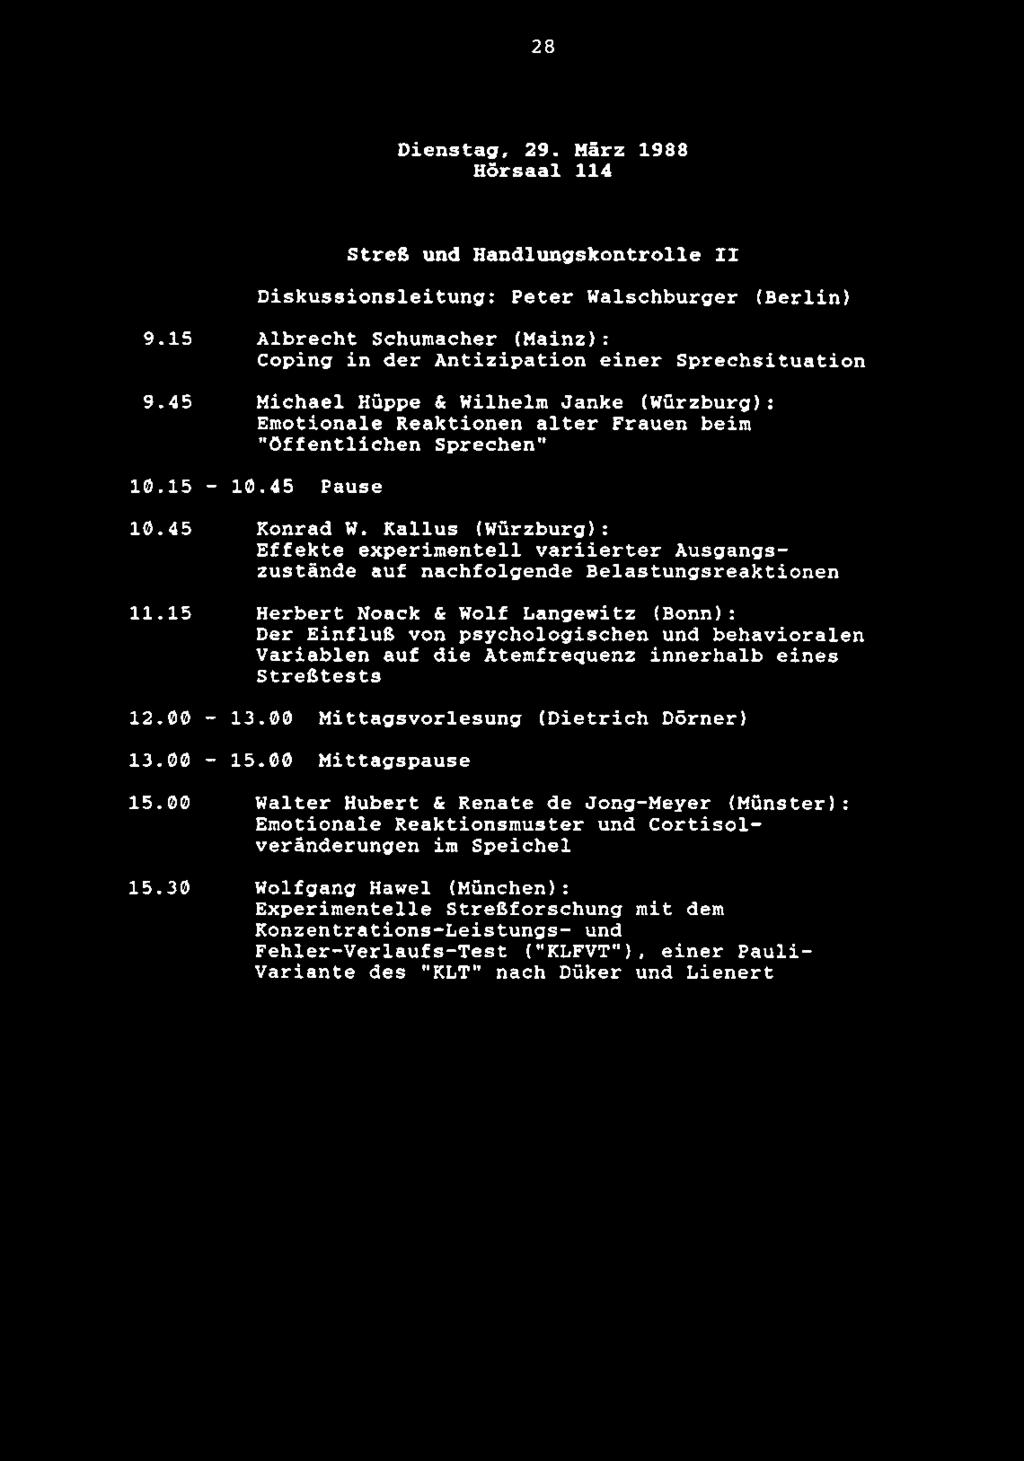 28 Dienstag, 29. Marz 1988 Horsaal 114 Strefi und Handlungskontrolle II Diskussionsleitung: Peter Walschburger (Berlin) 9.